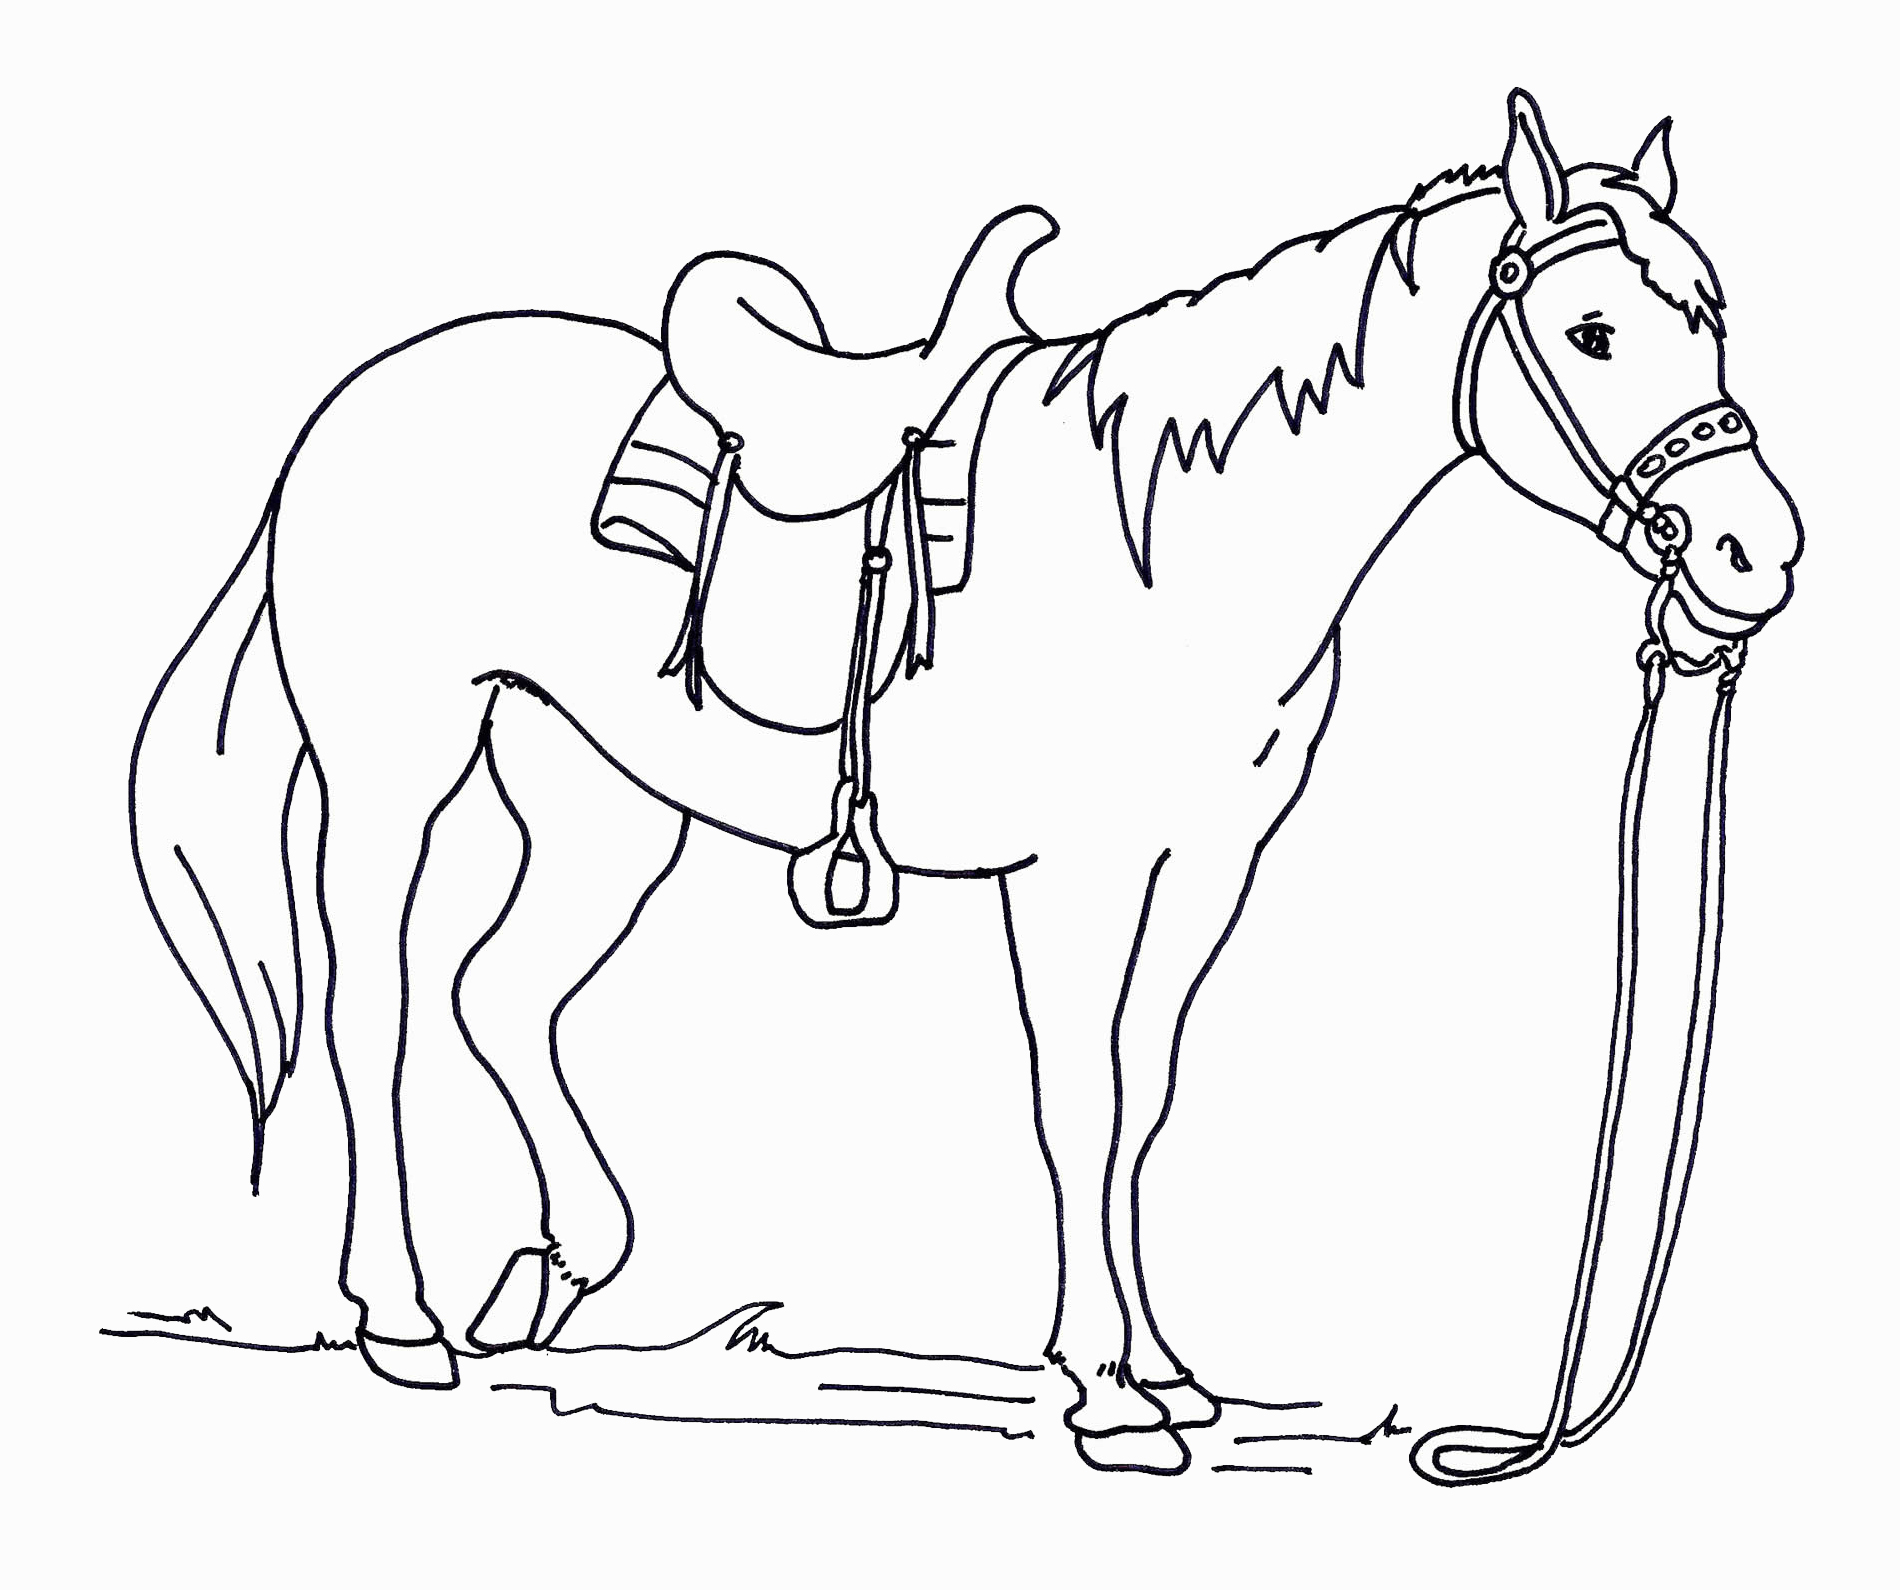 Раскрашиваем лошадку. Раскраска. Лошади. Раскраска конь. Картинки для раскрашивания лошадки. Лошадка раскраска для малышей.